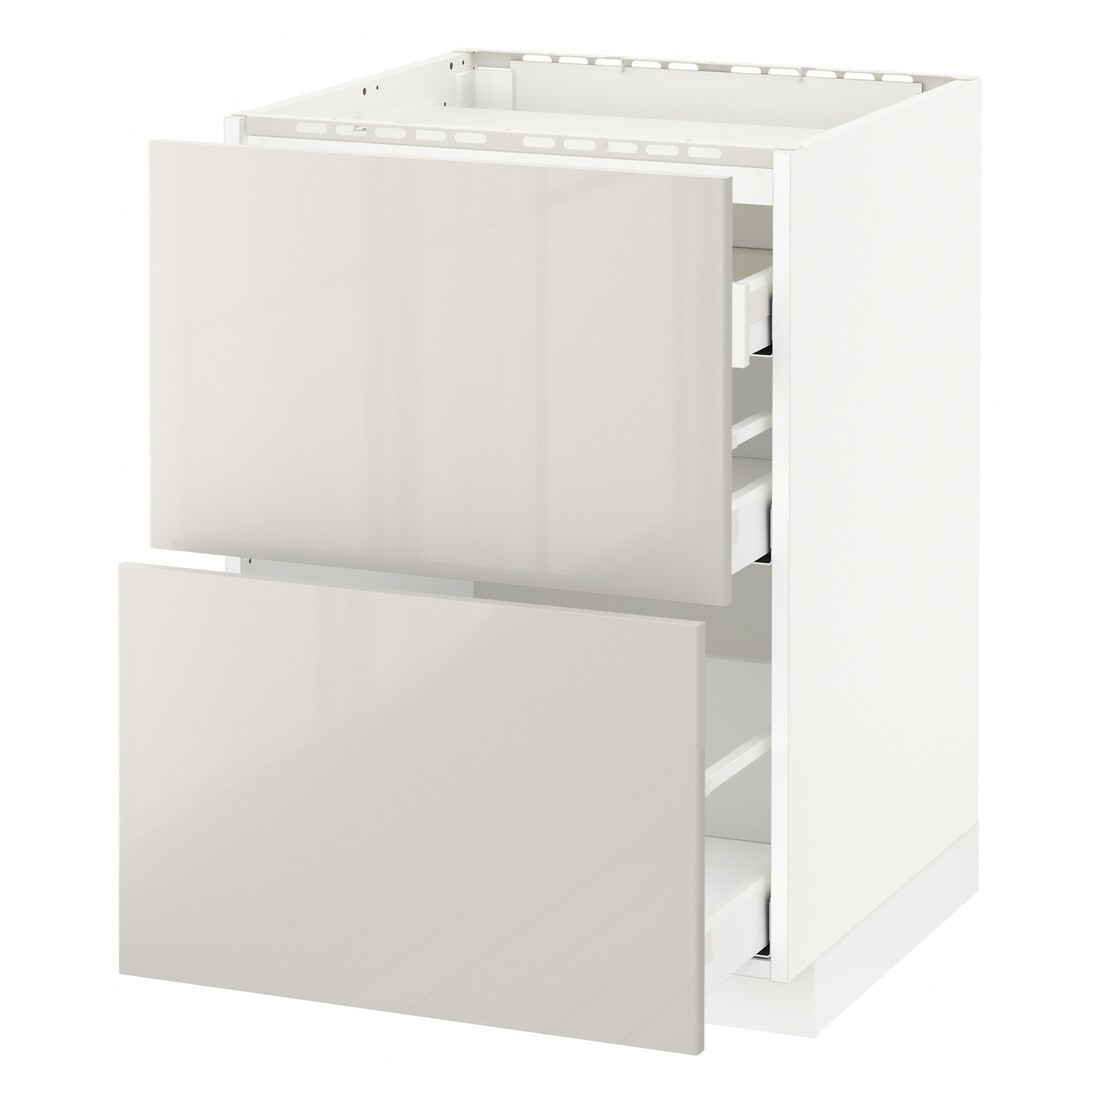 IKEA METOD МЕТОД / MAXIMERA МАКСИМЕРА Напольный шкаф с ящиками, белый / Ringhult светло-серый, 60x60 см 69142436 691.424.36